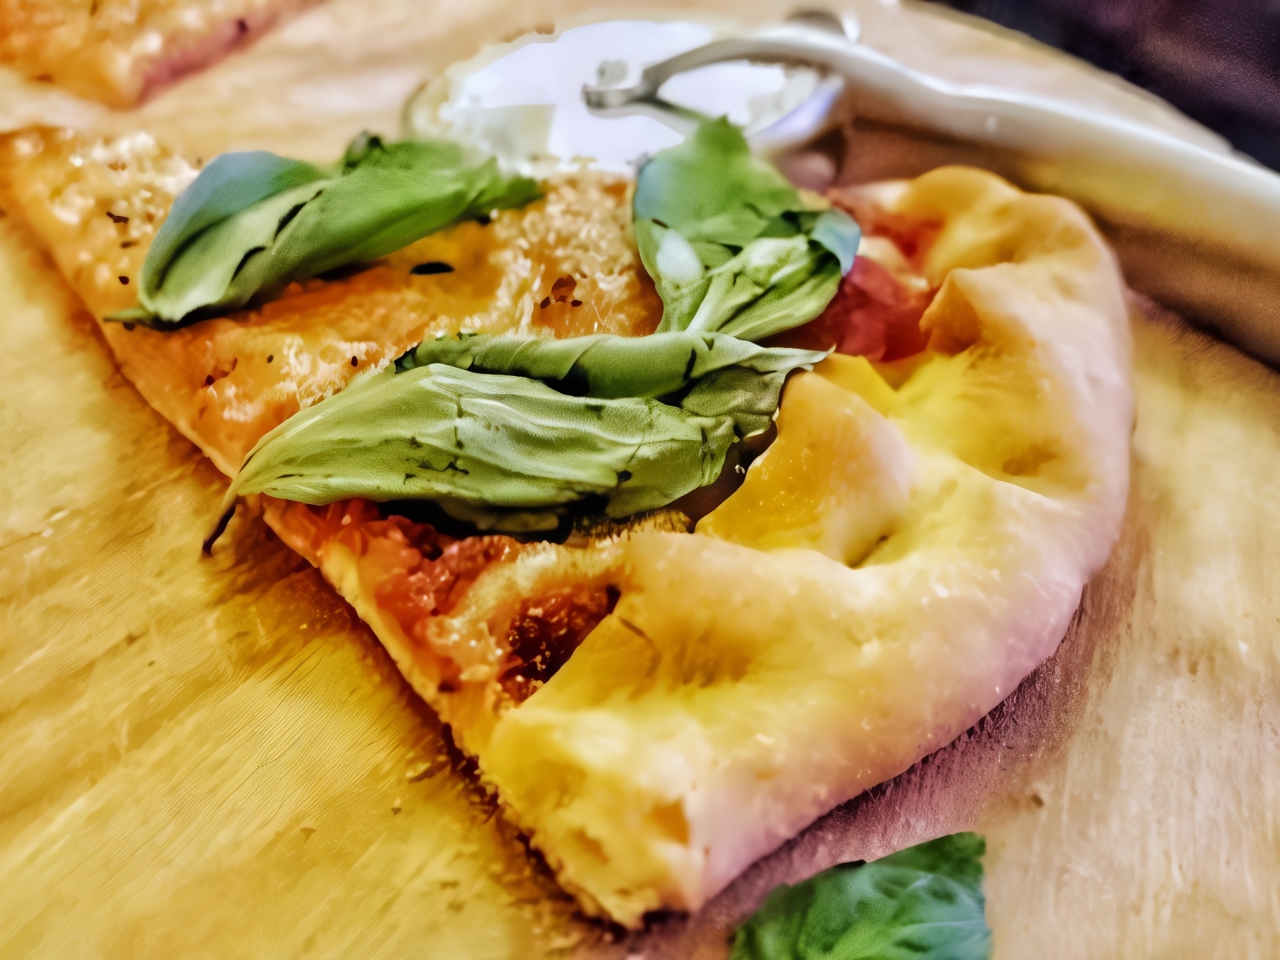 Итальянская пицца на тонком тесте